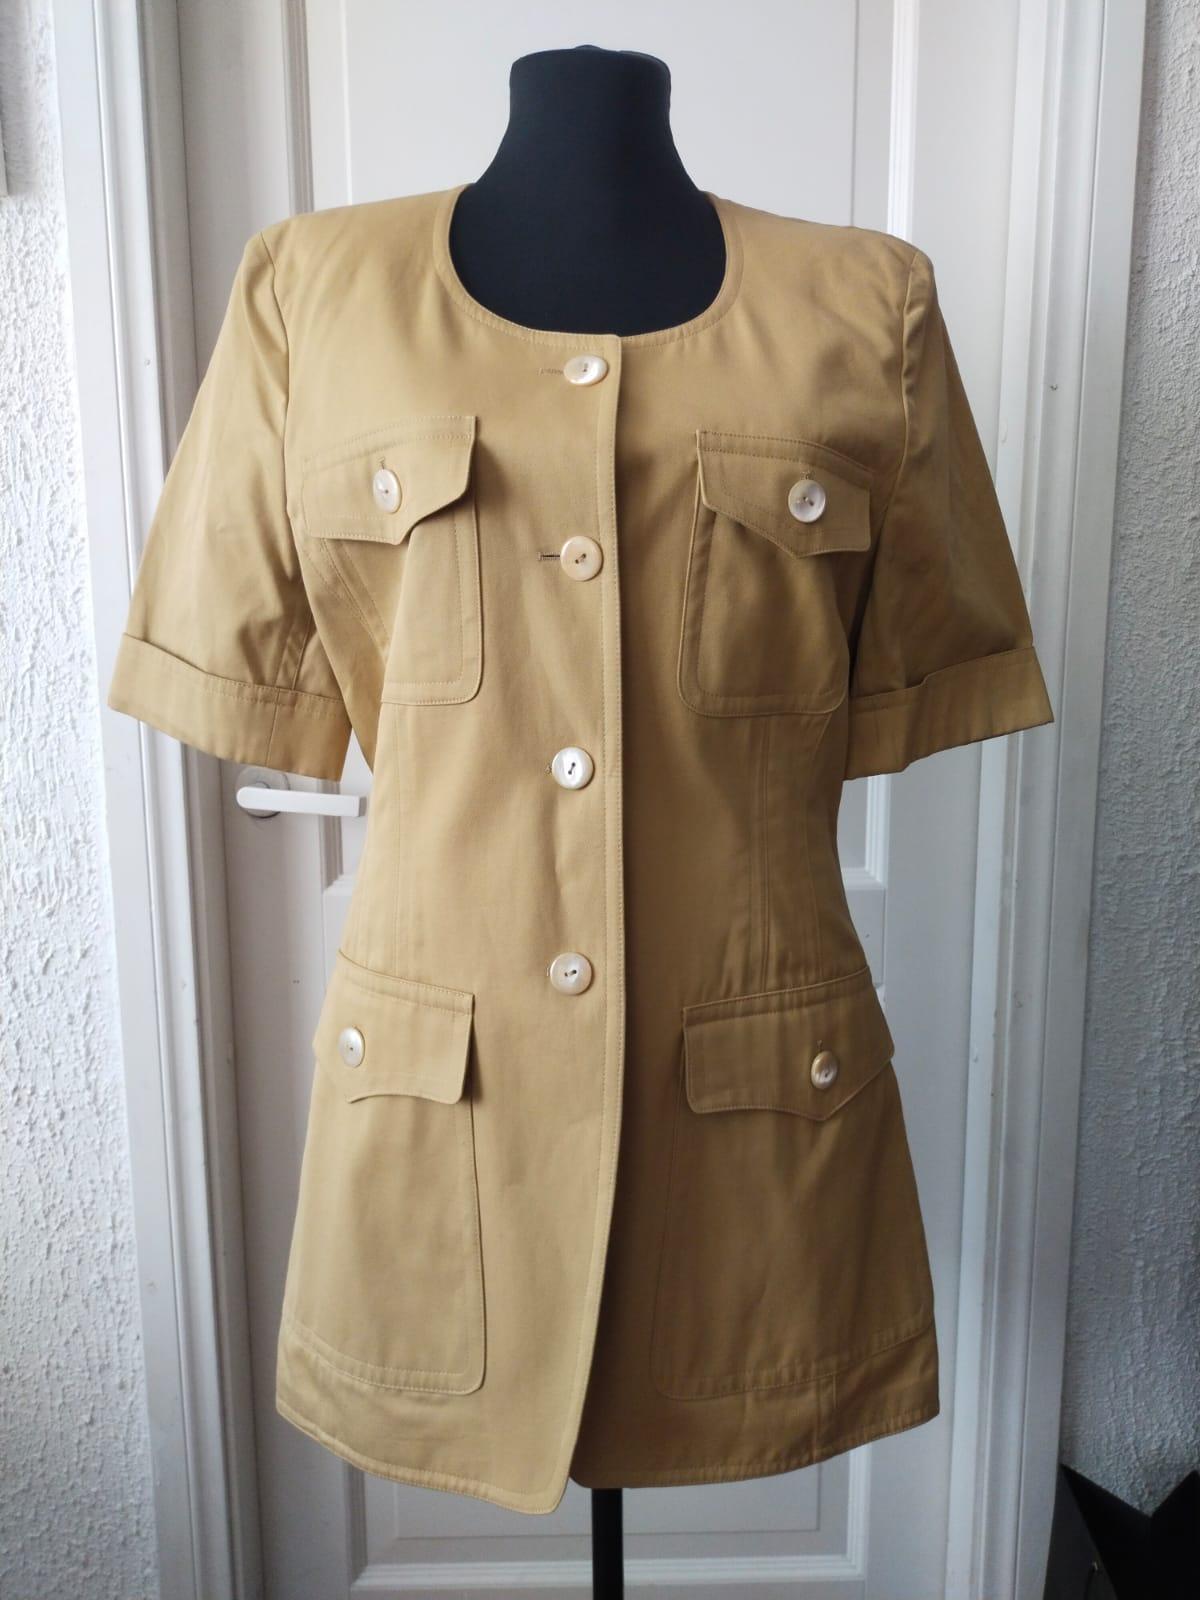 Escada by Margaretha Ley safari jacket For Sale 1